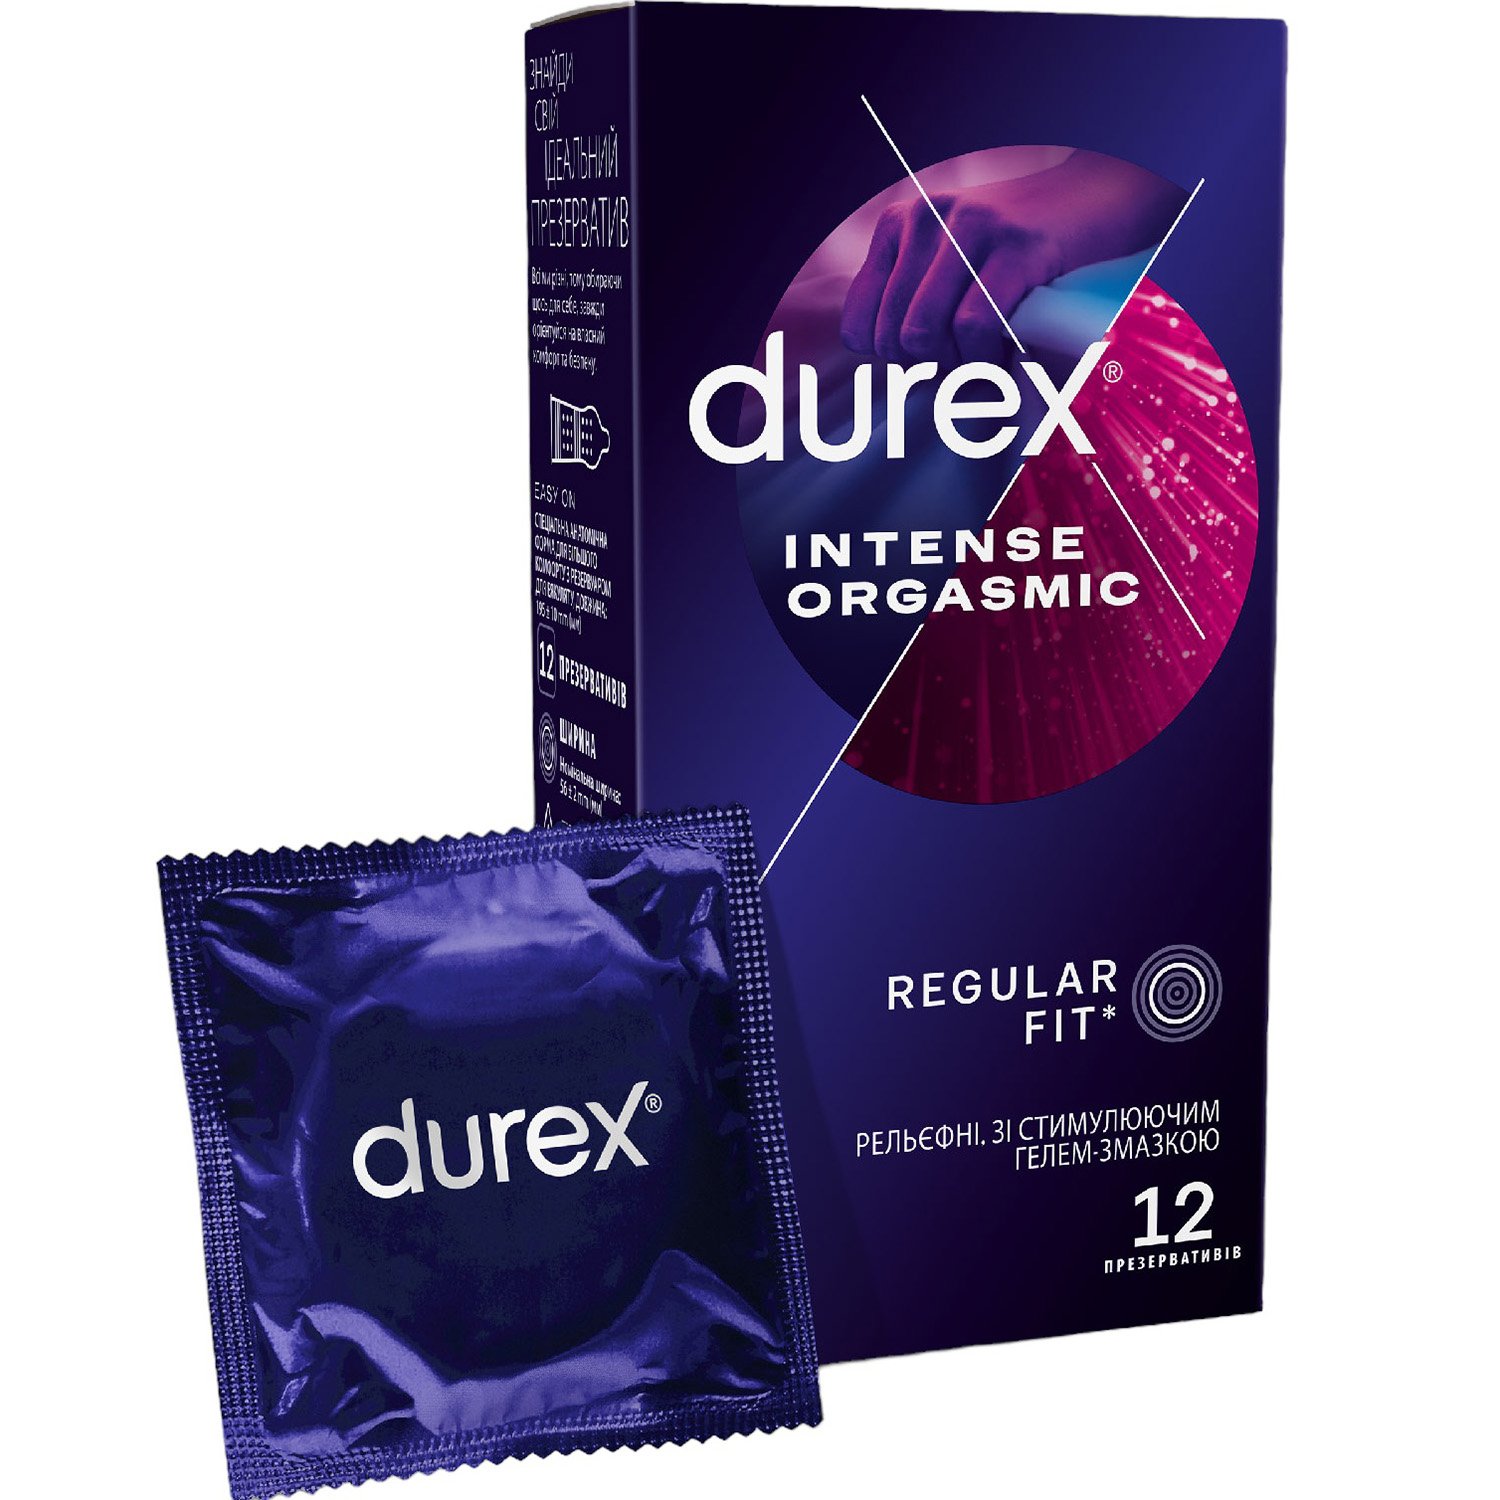 Презервативы латексные с силиконовой смазкой Durex Intense Orgasmic, рельефные, со стимулирующим гелем-смазкой, 12 шт. (3044083) - фото 1